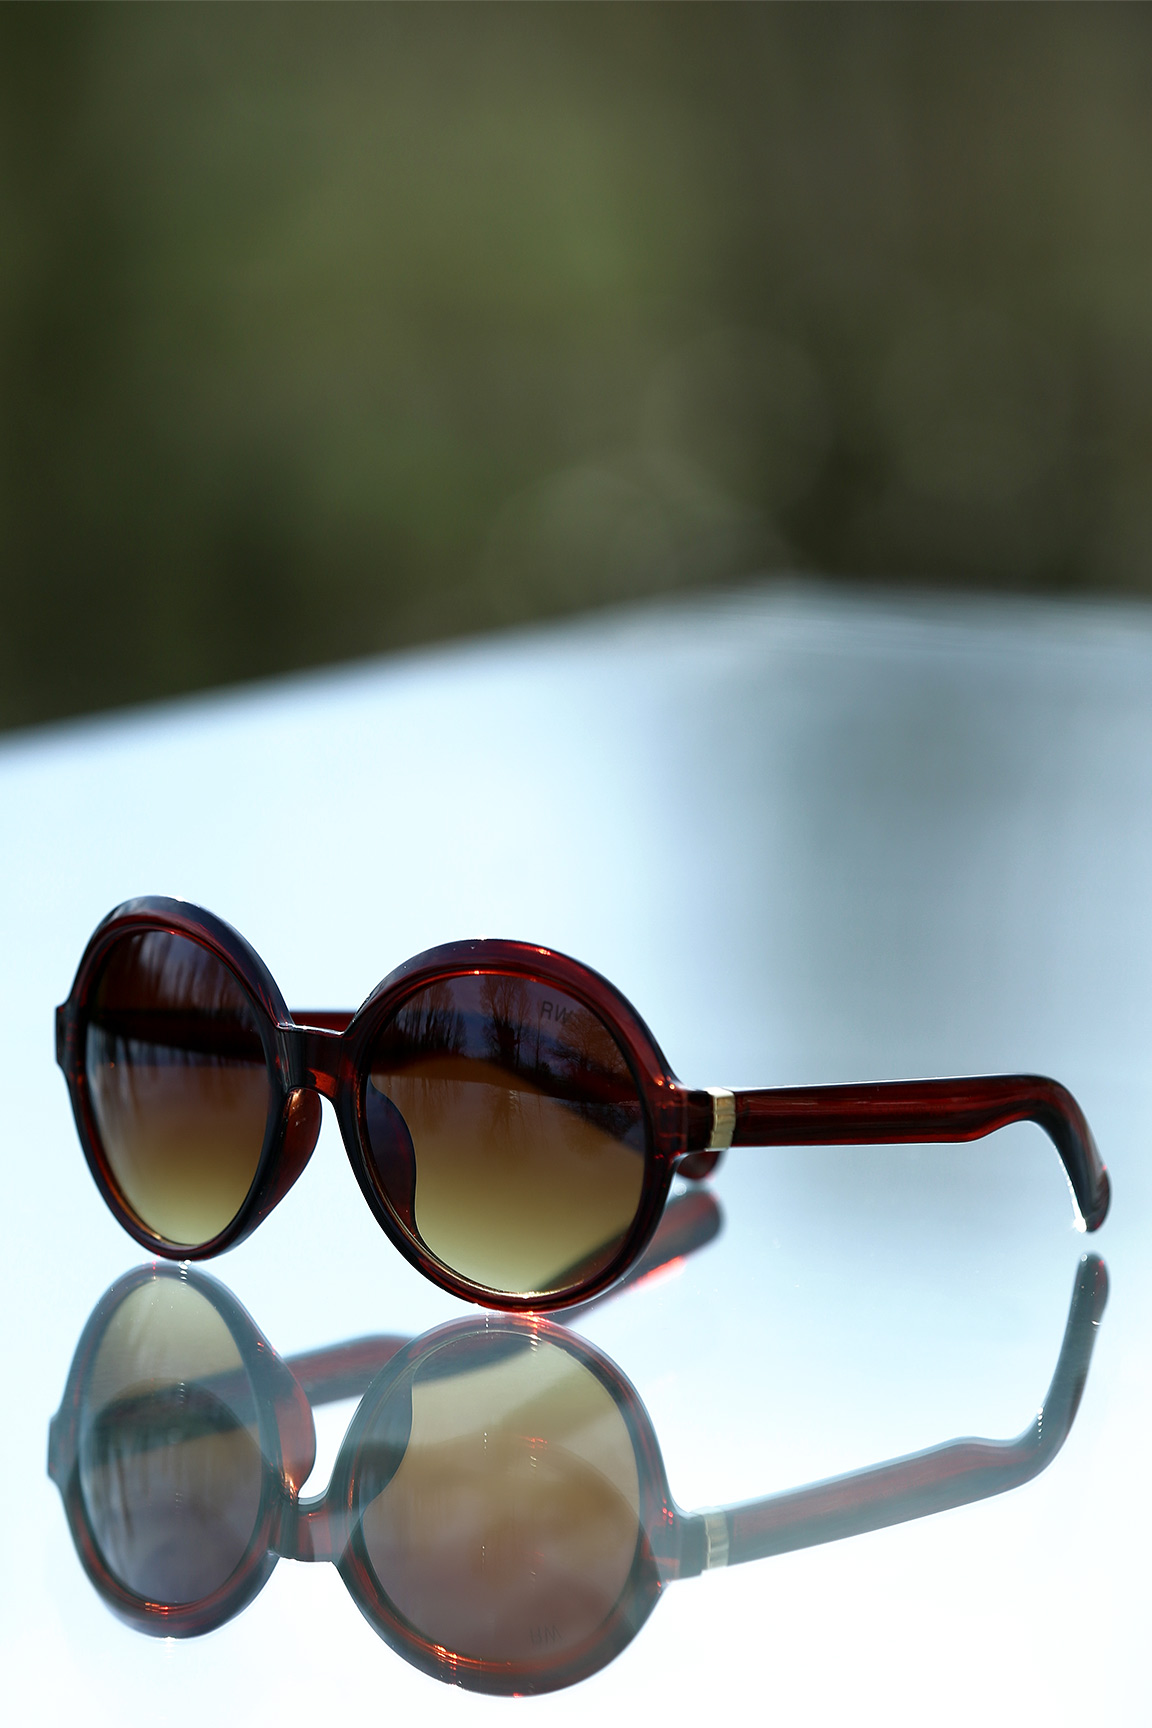 نظارات شمسية 2016 أحدث مجموعة نظارات شمسية وطبية من كارل لاغرفيلد - صور نظارات شمسية 2016